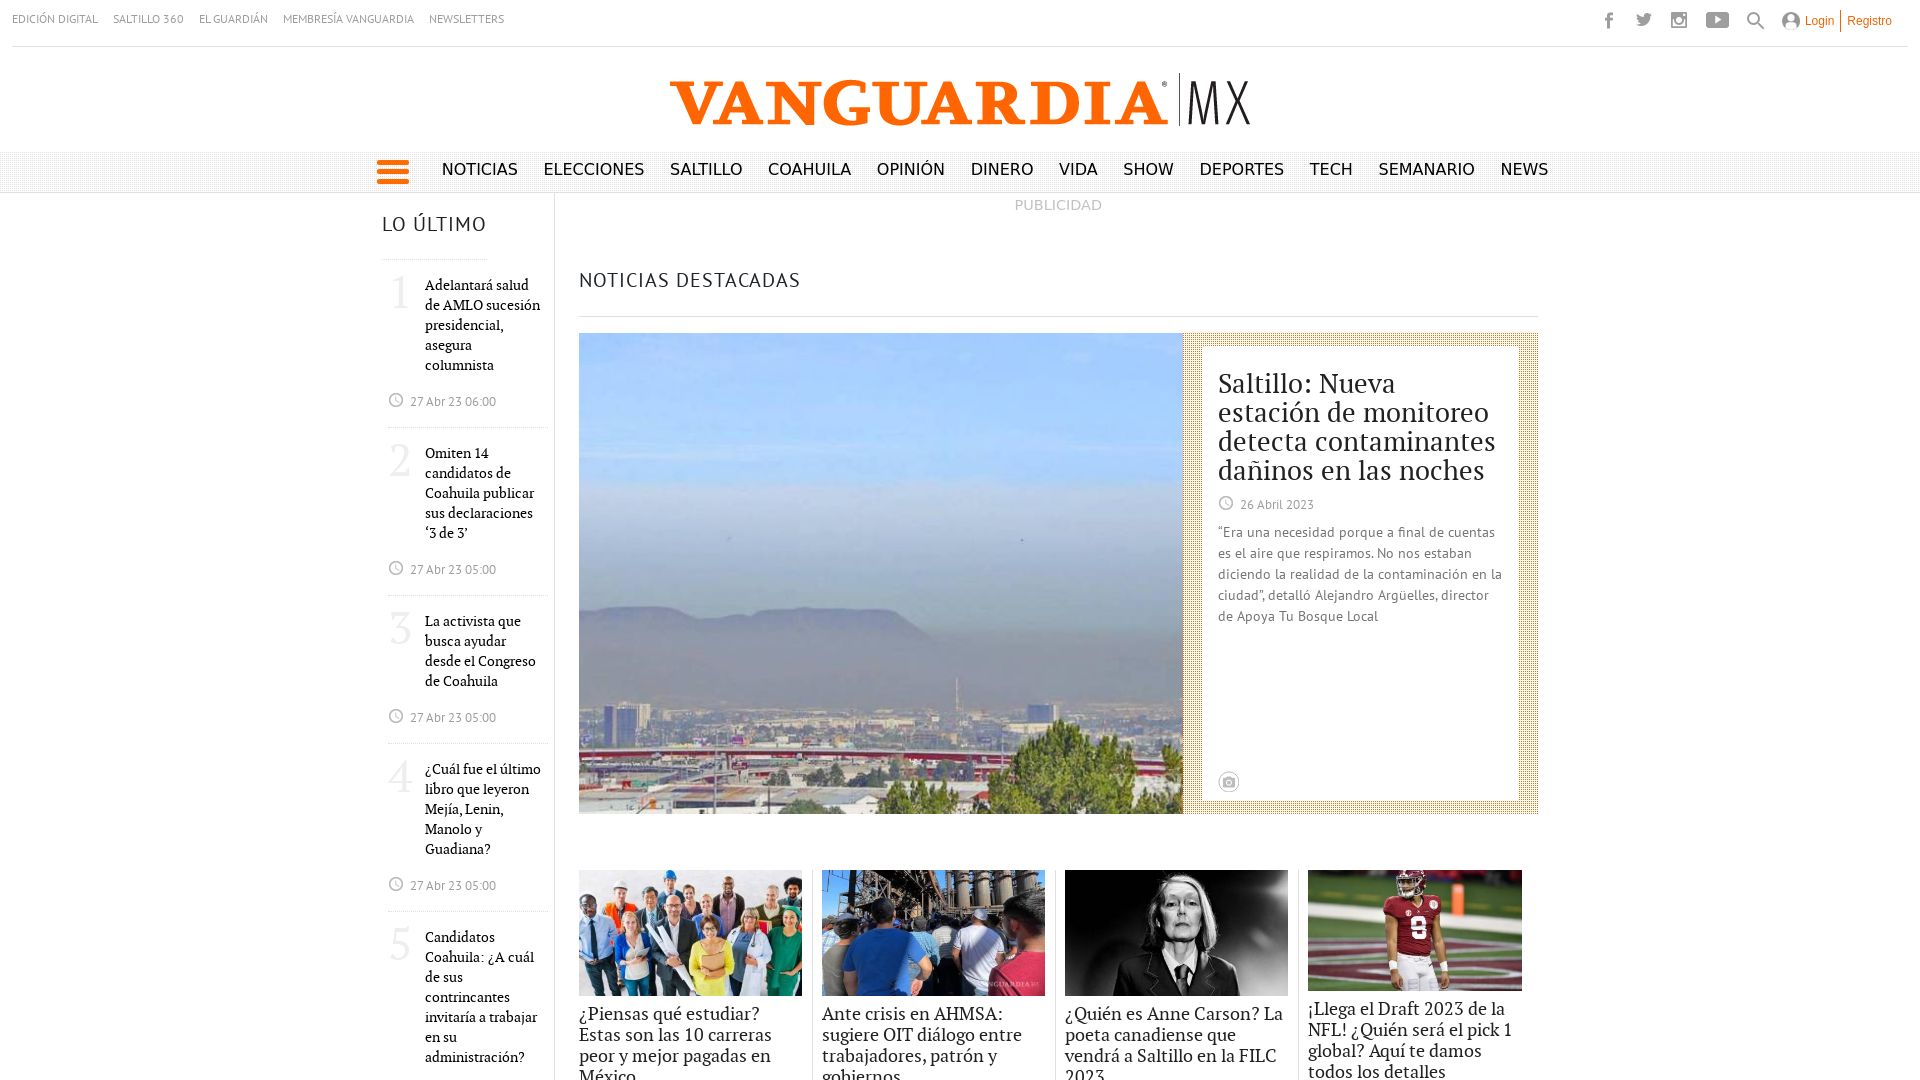 Website status vanguardia.com.mx is   ONLINE